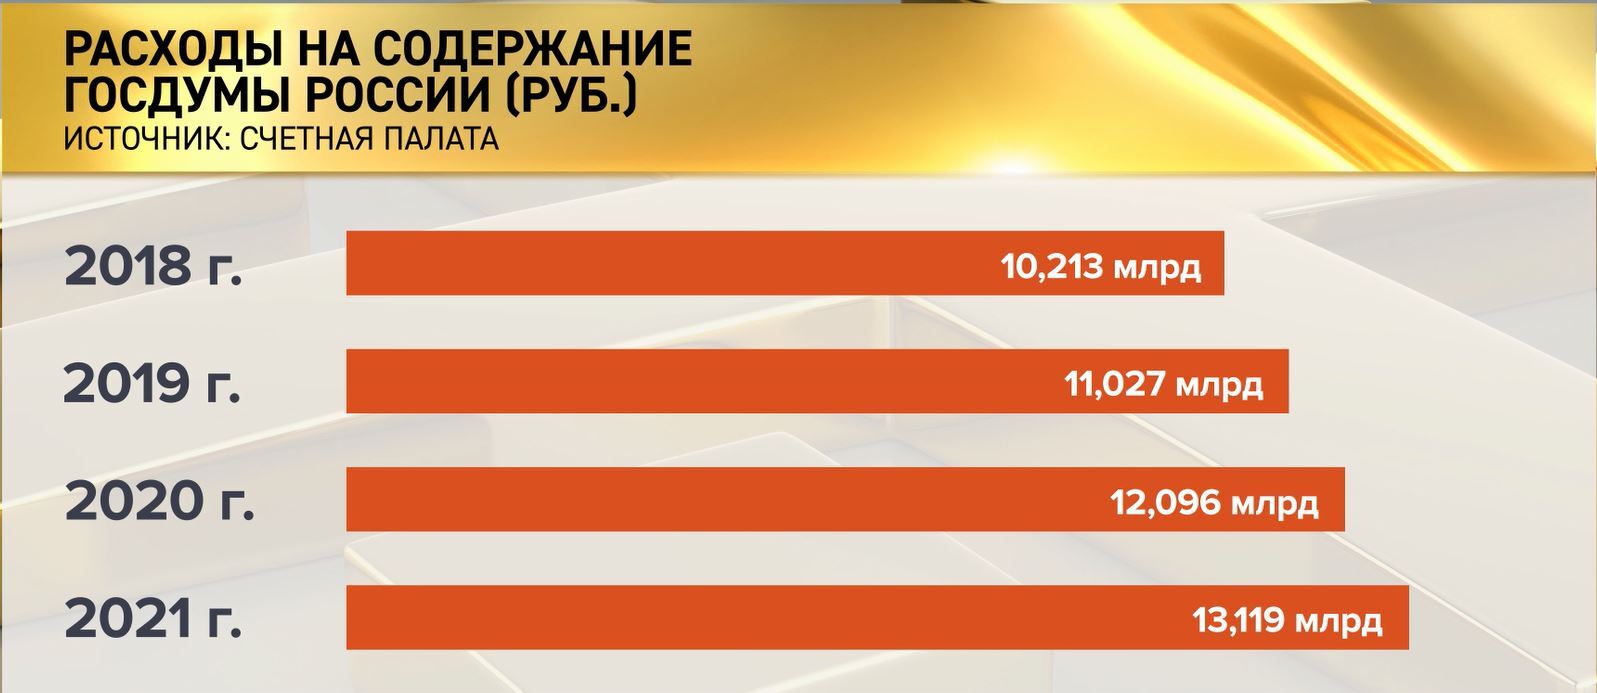 Количество депутатов в России